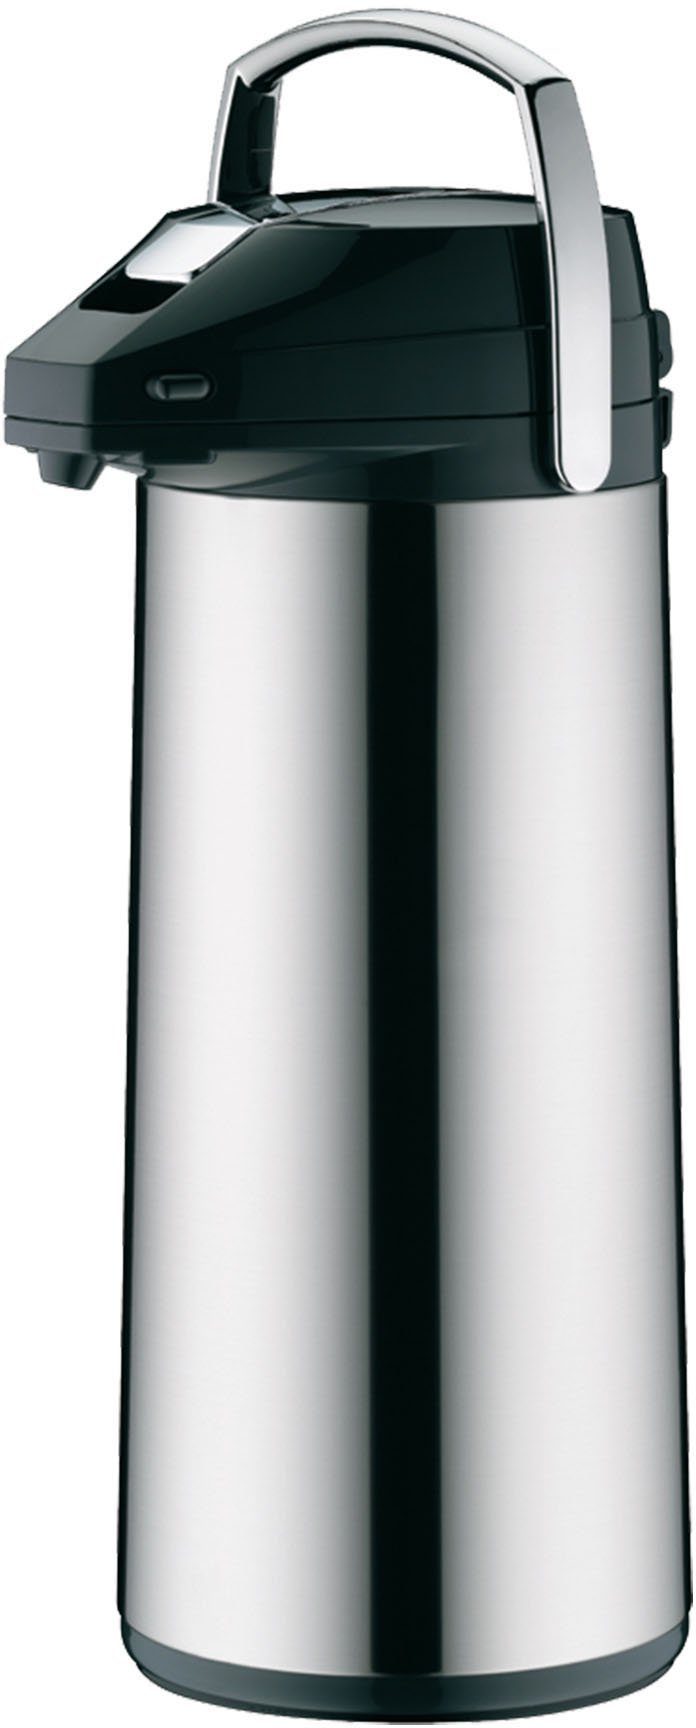 Alfi Pump-Isolierkanne, 3,0 l, Edelstahl, mit Glaseinsatz edelstahlfarben